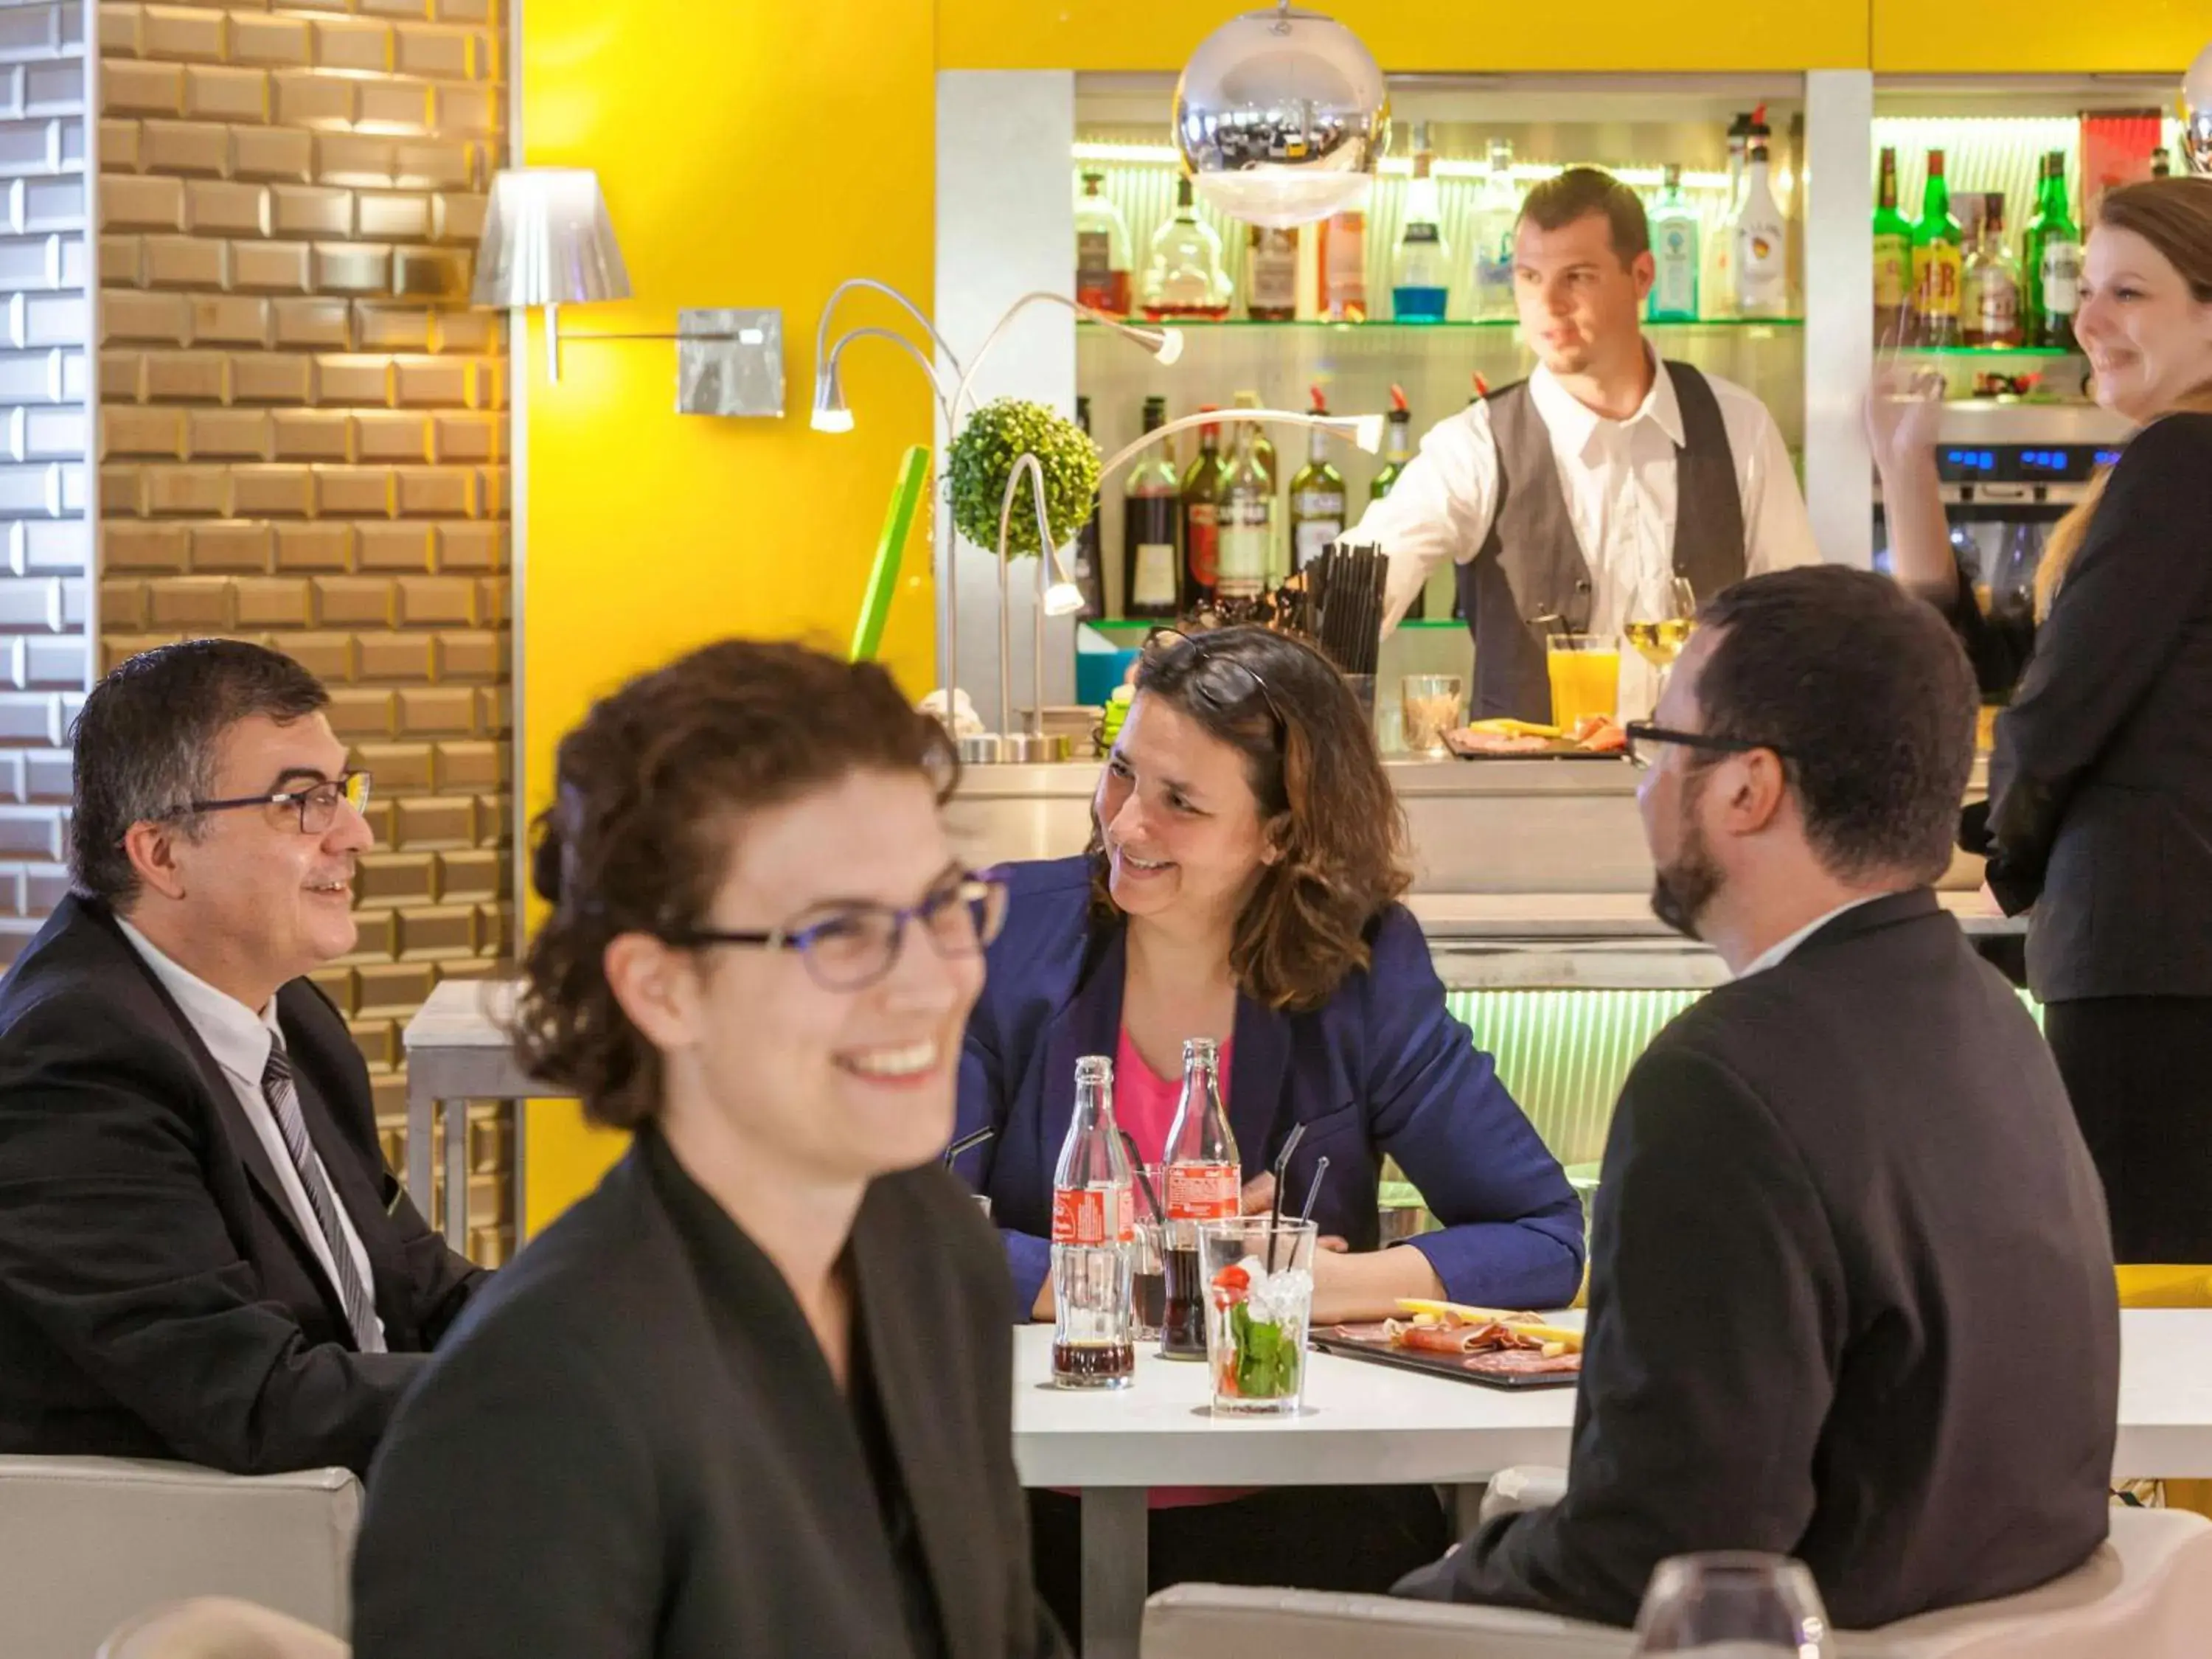 Restaurant/places to eat in Mercure Paris Massy Gare TGV